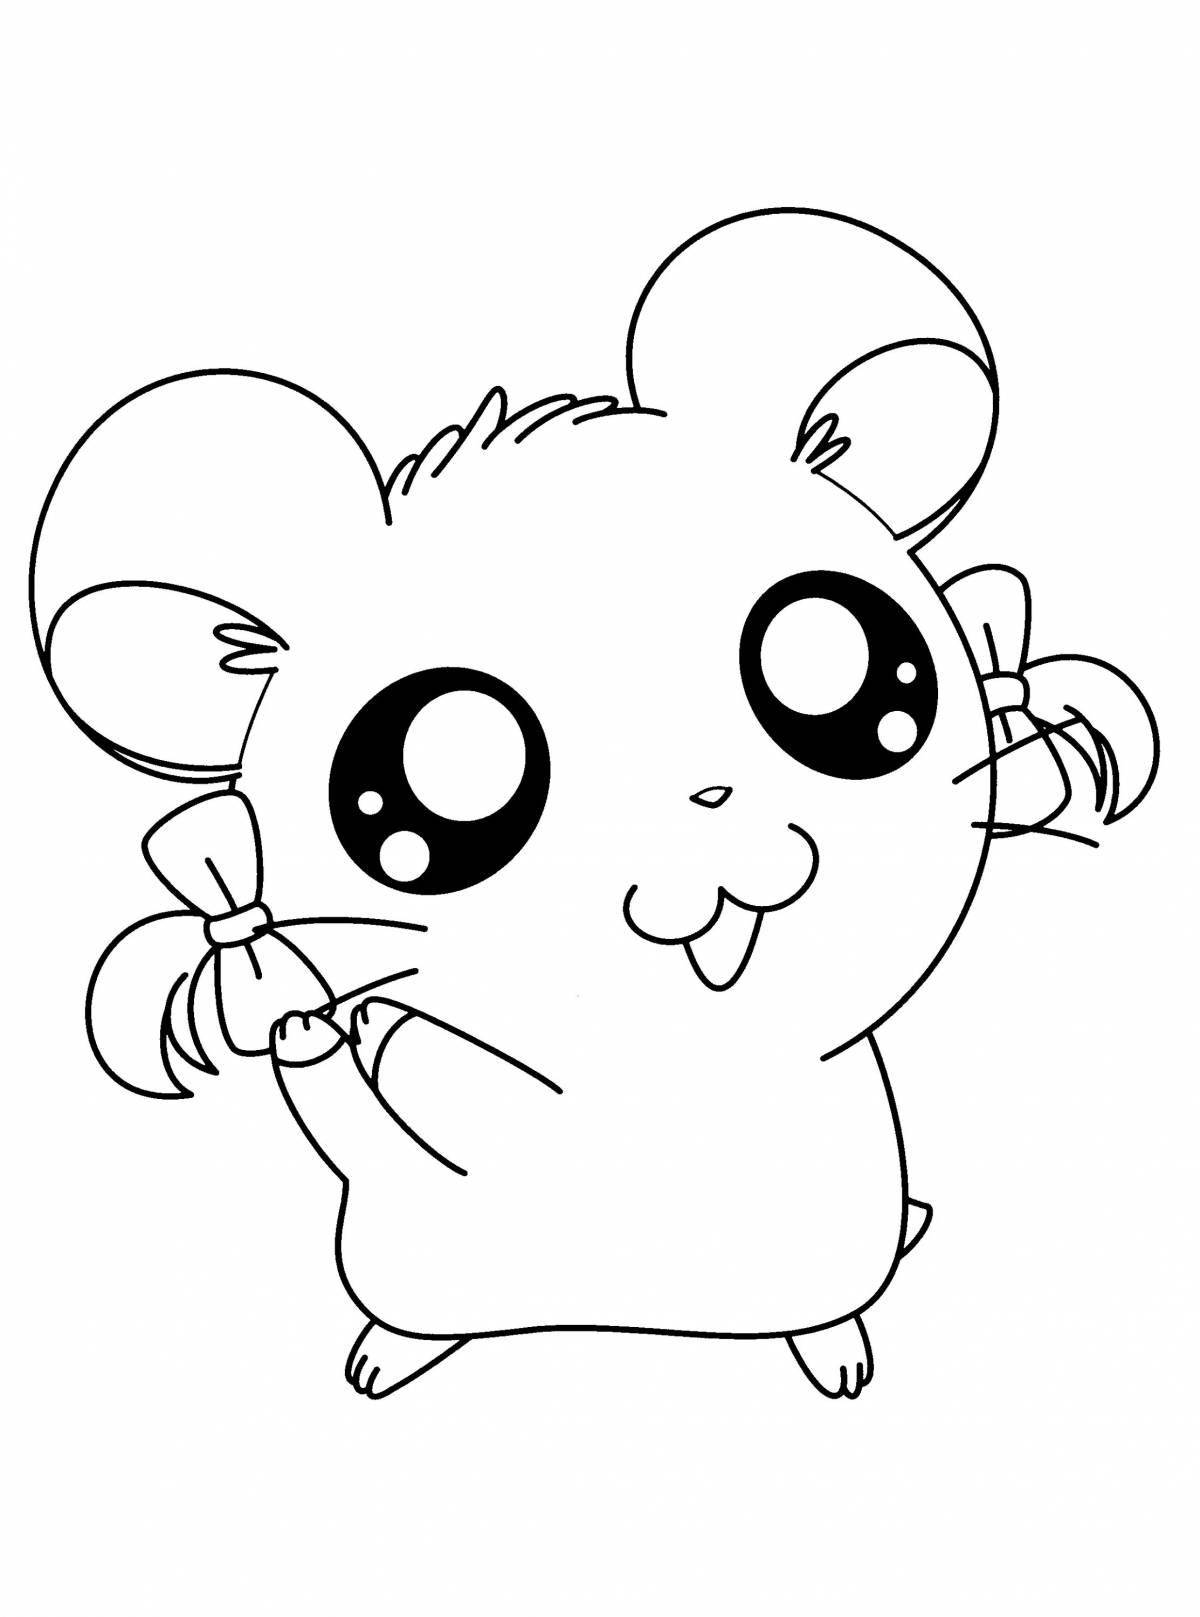 Cute hamster coloring book